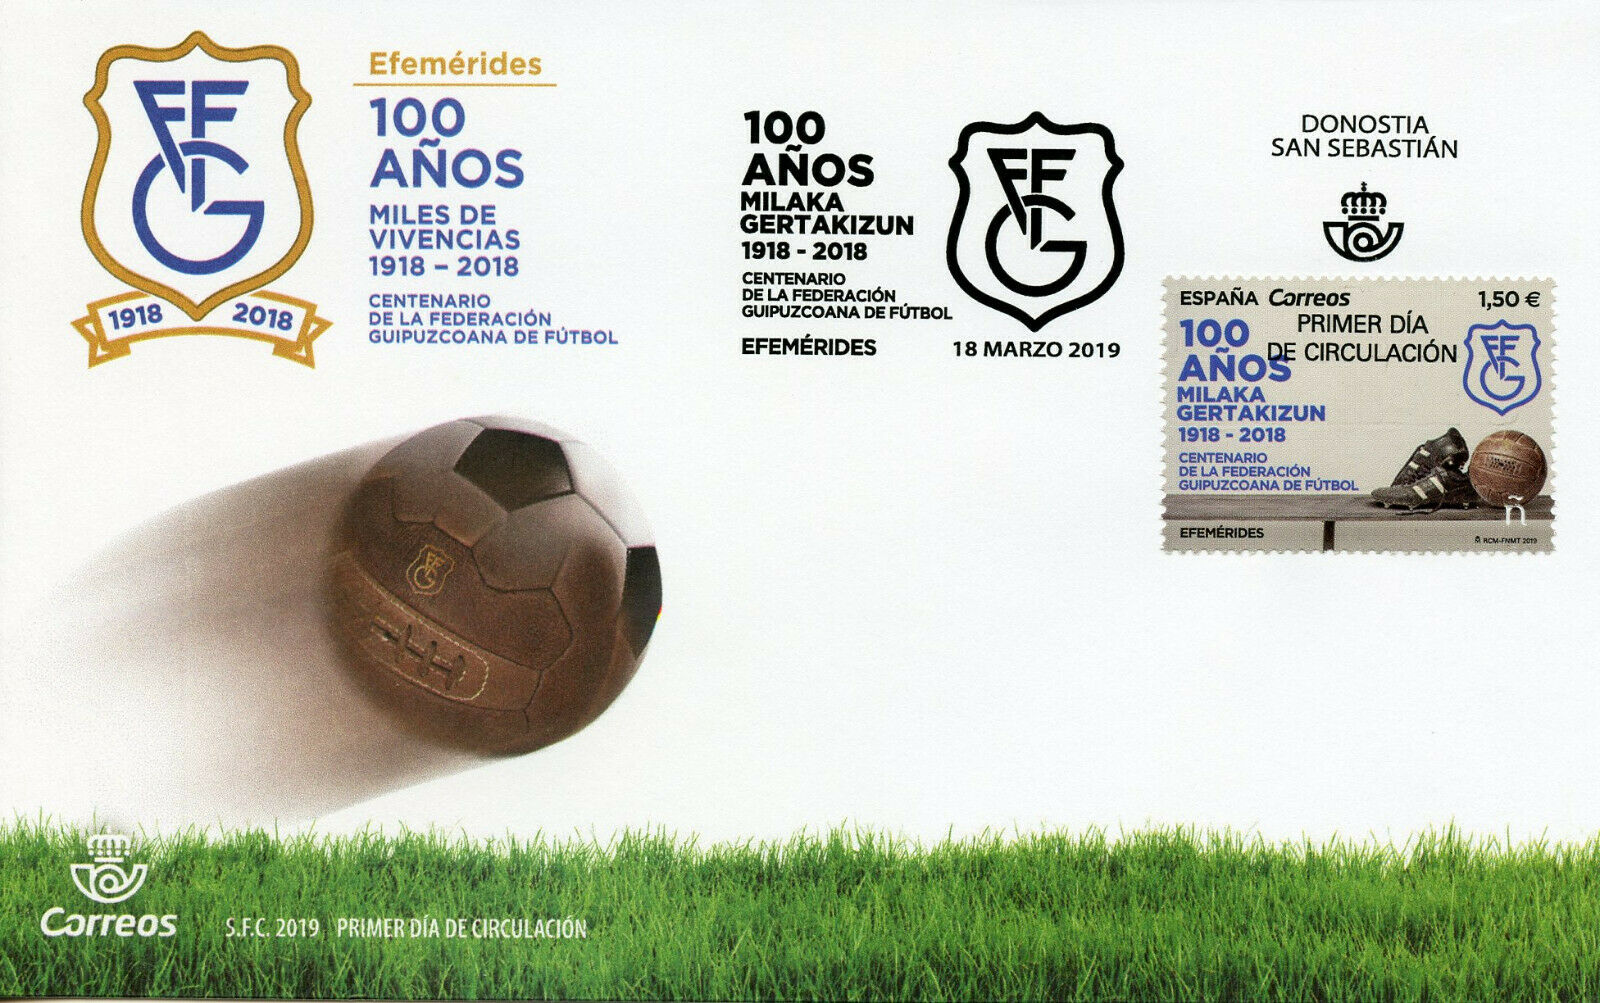 Spain 2019 FDC Federacion Guipuzcoana de Futbol 1v Cover Football Soccer Stamps